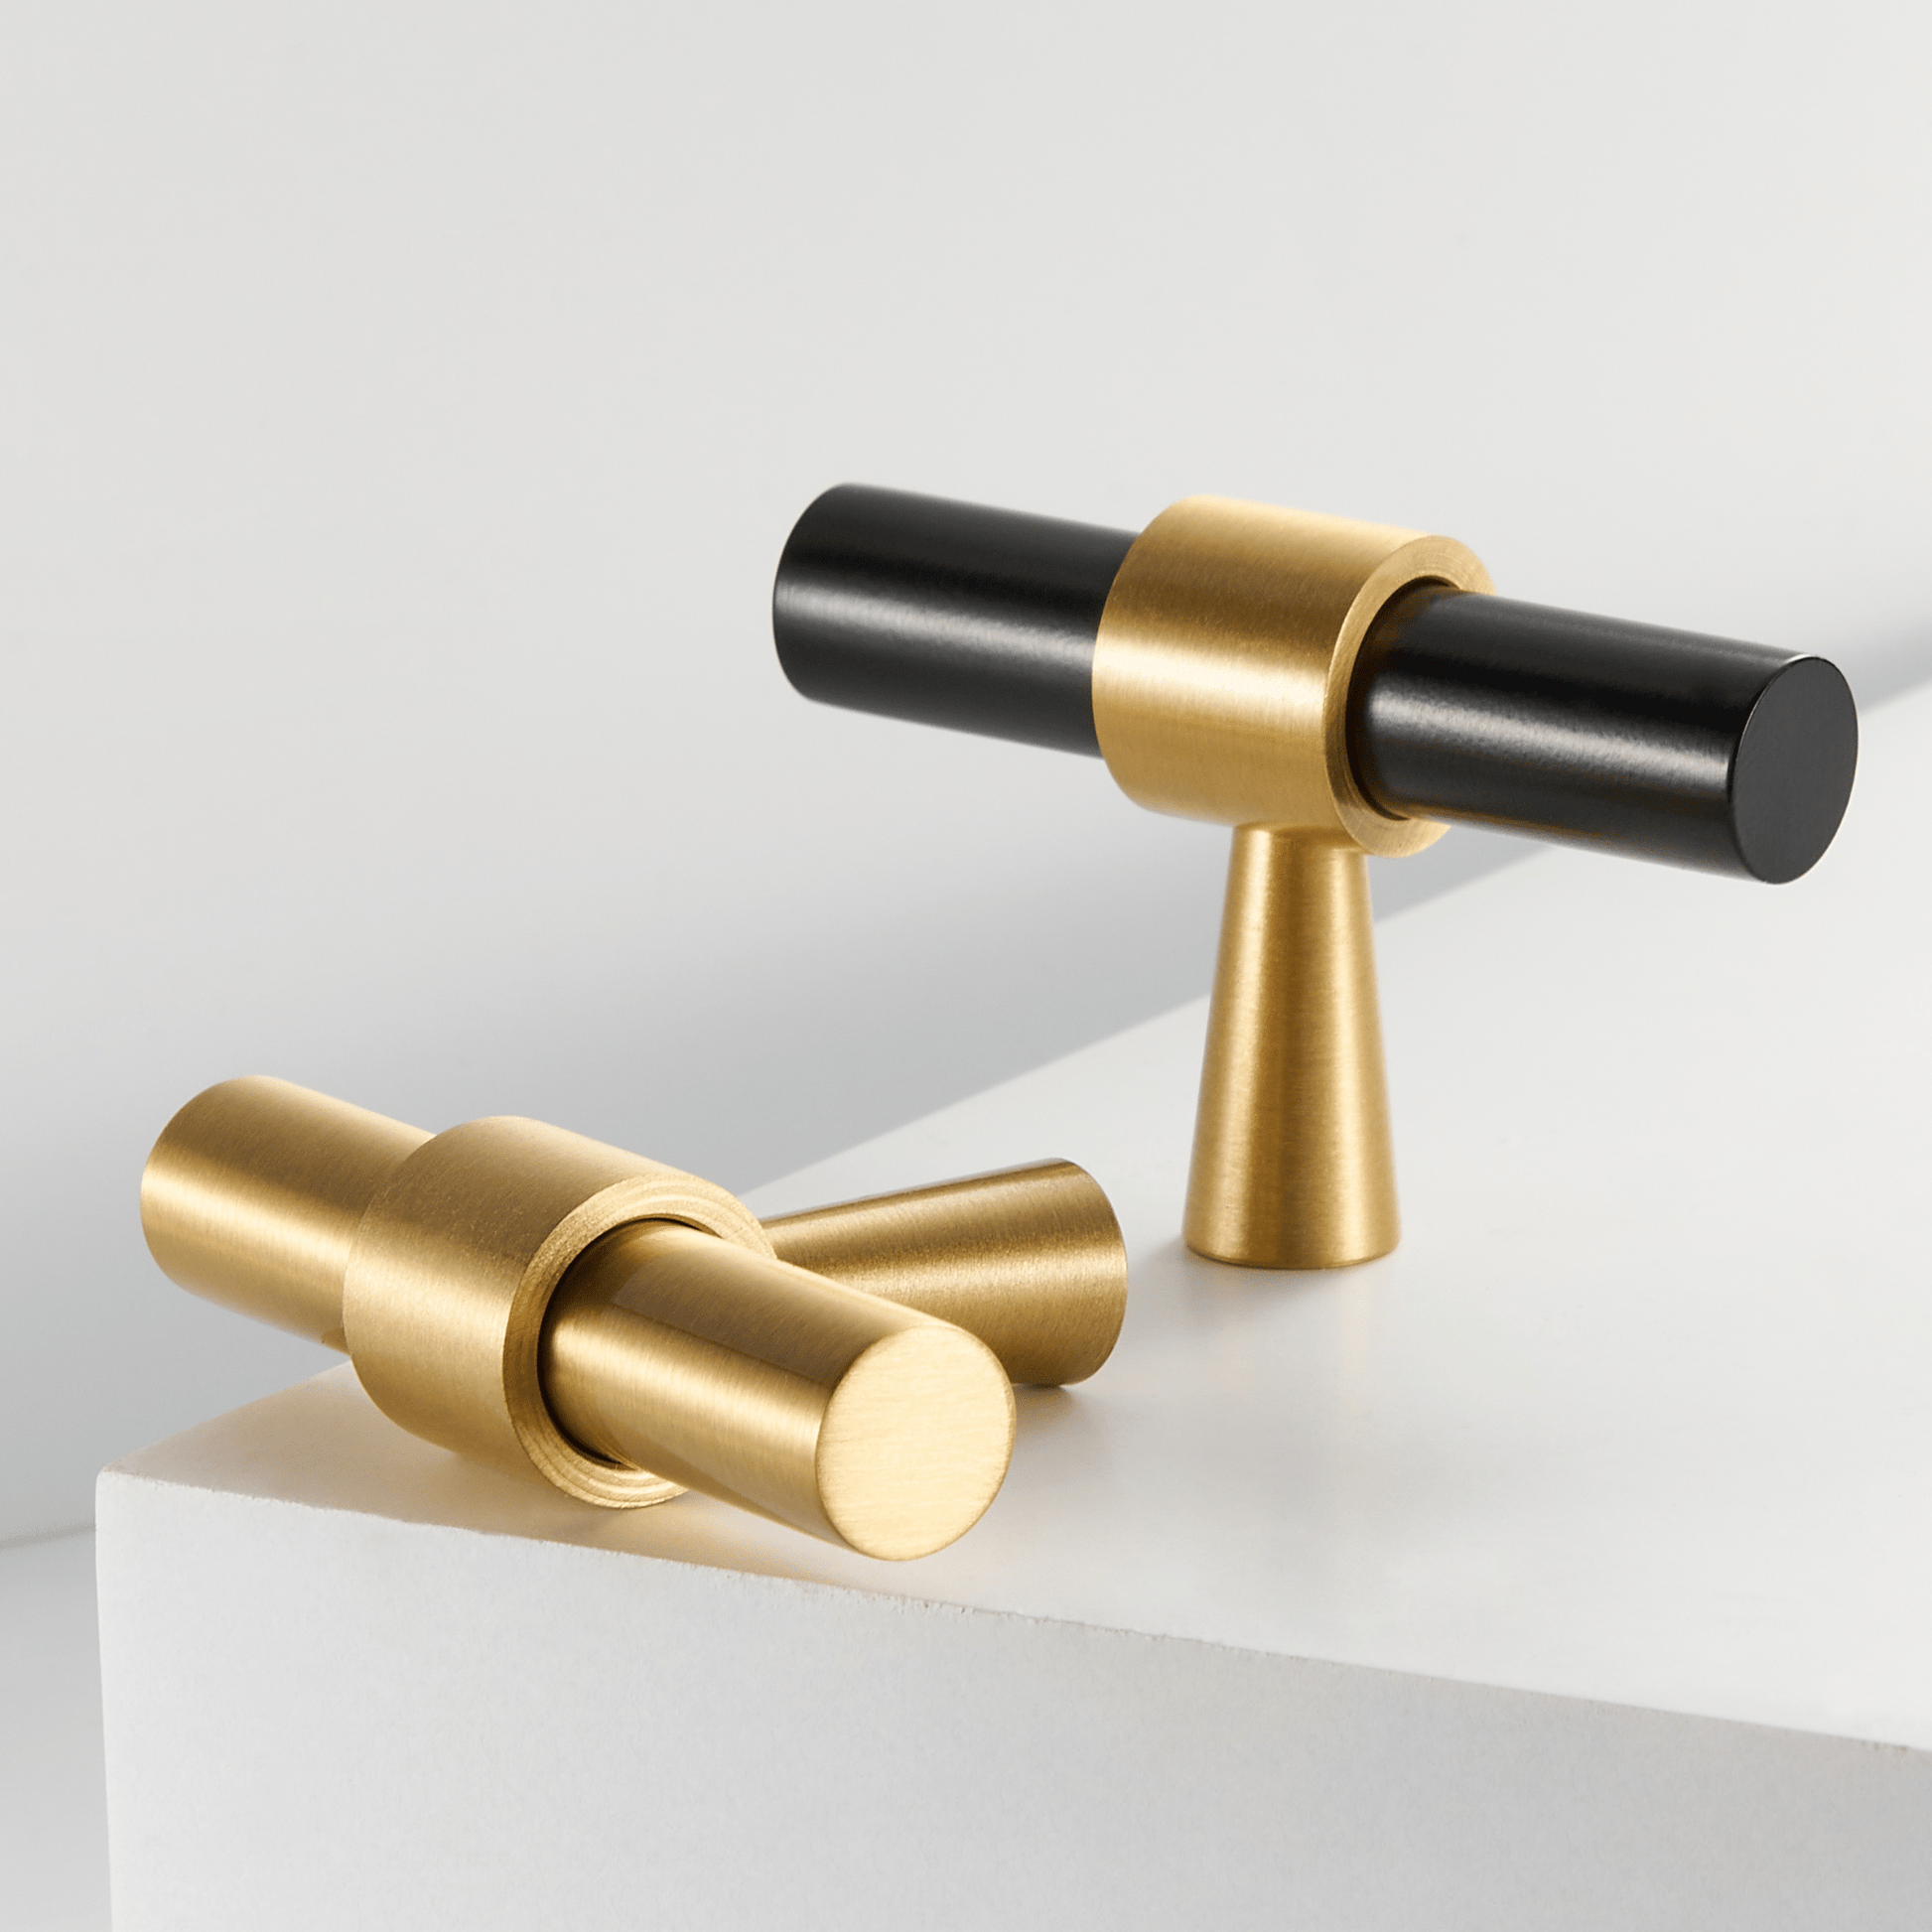 Cabinet Knobs & Handles 50 x 32mm T Bar / Satin Brass / Solid Brass Bayside Luxe - Albert Park - Brass Shaker T Bar Handle